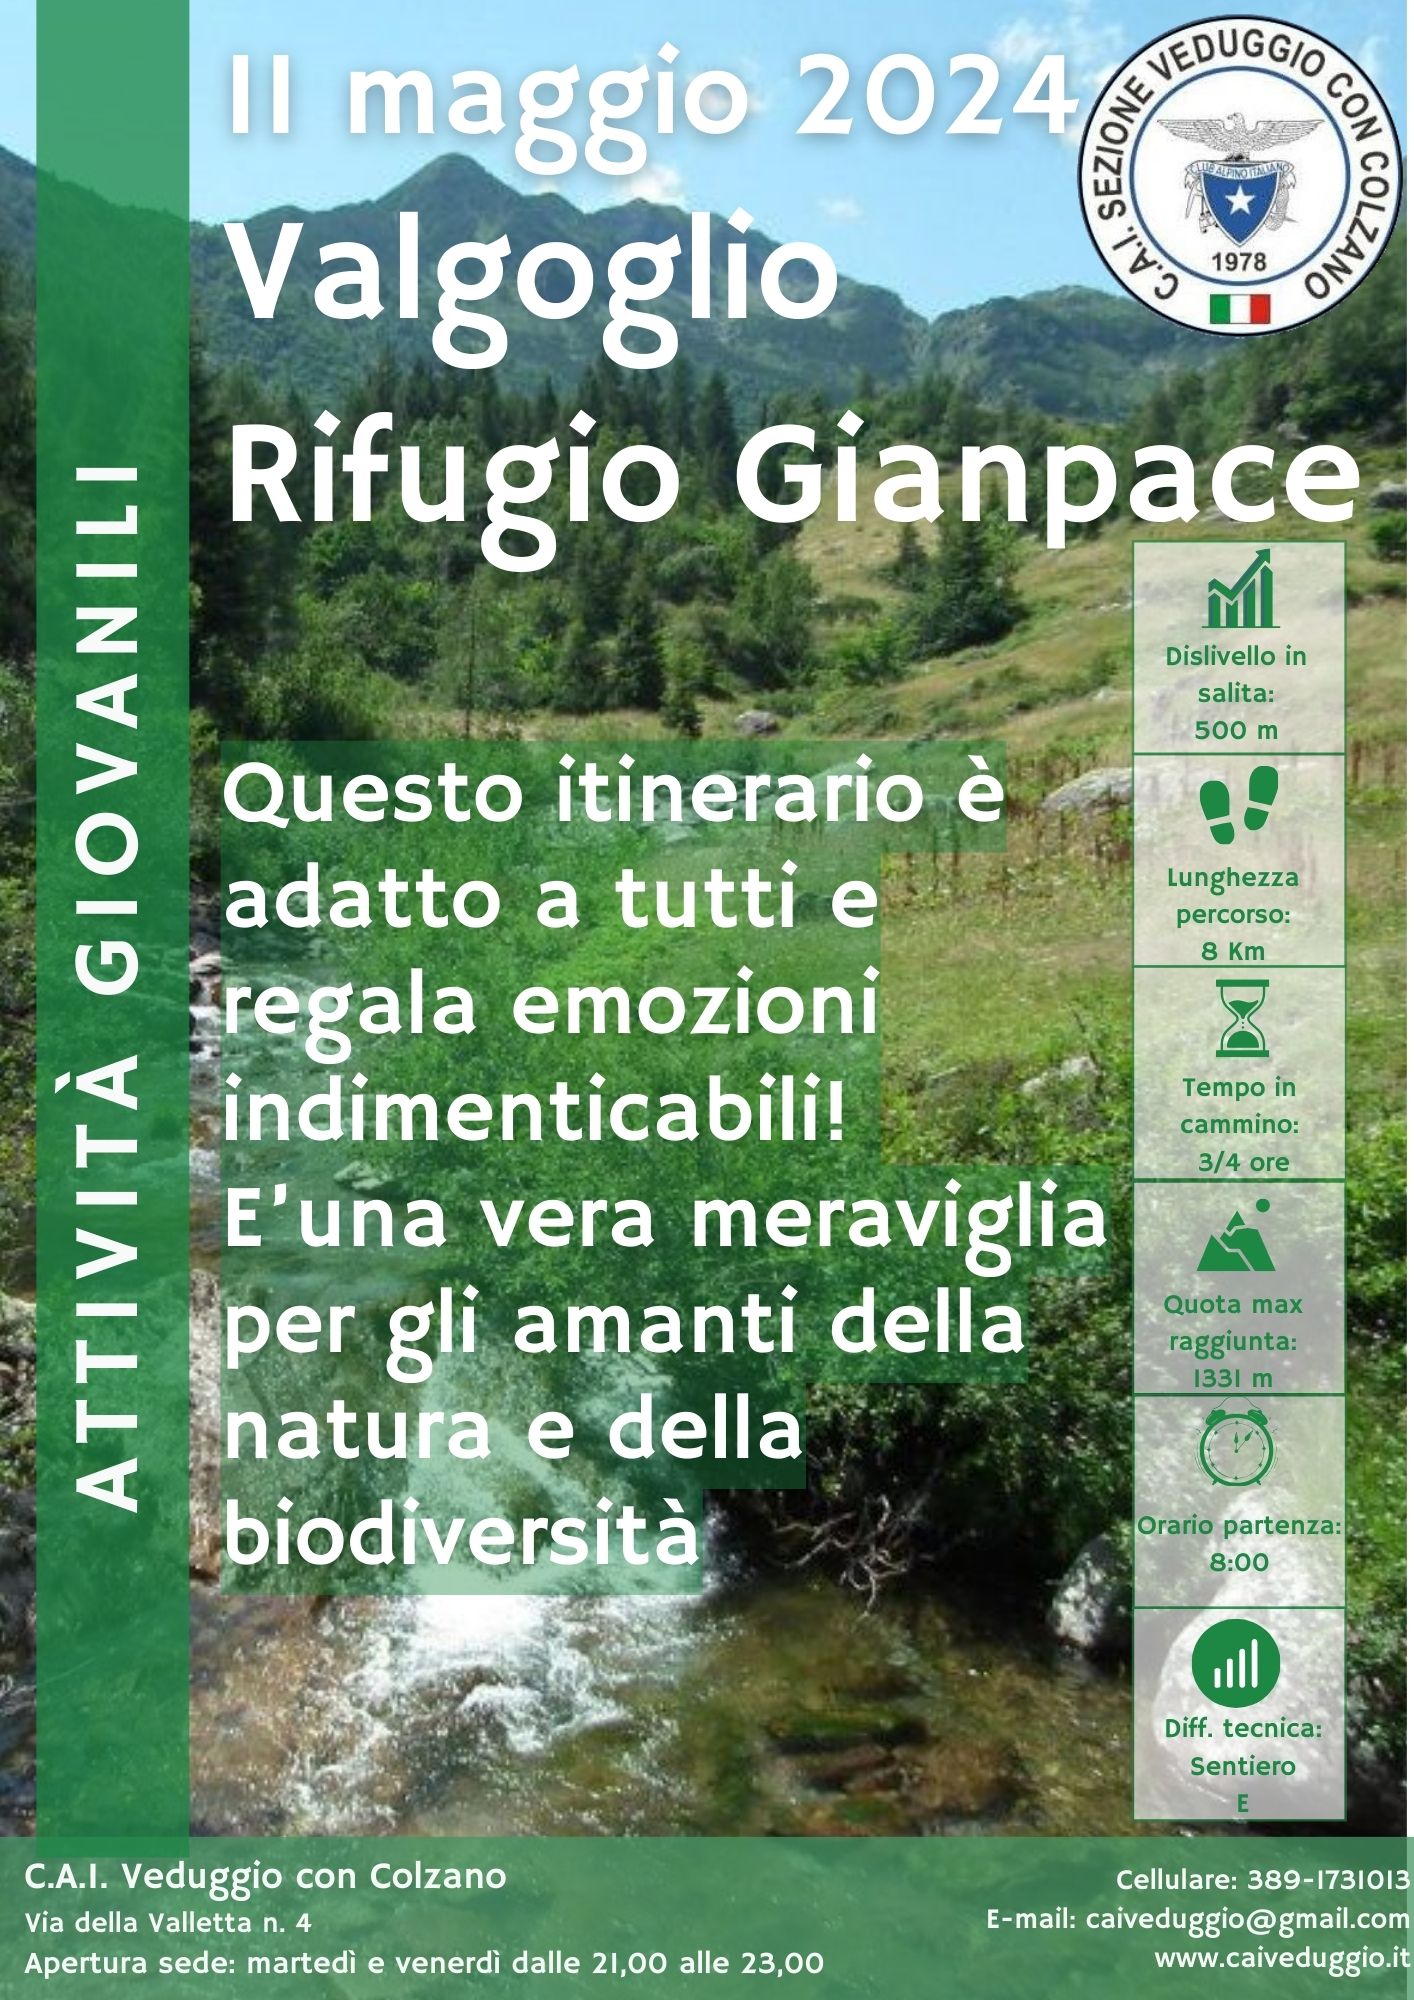 Sabato 11 maggio 2024 – Rifugio Gianpace – Valgoglio (Bimbi in cammino)